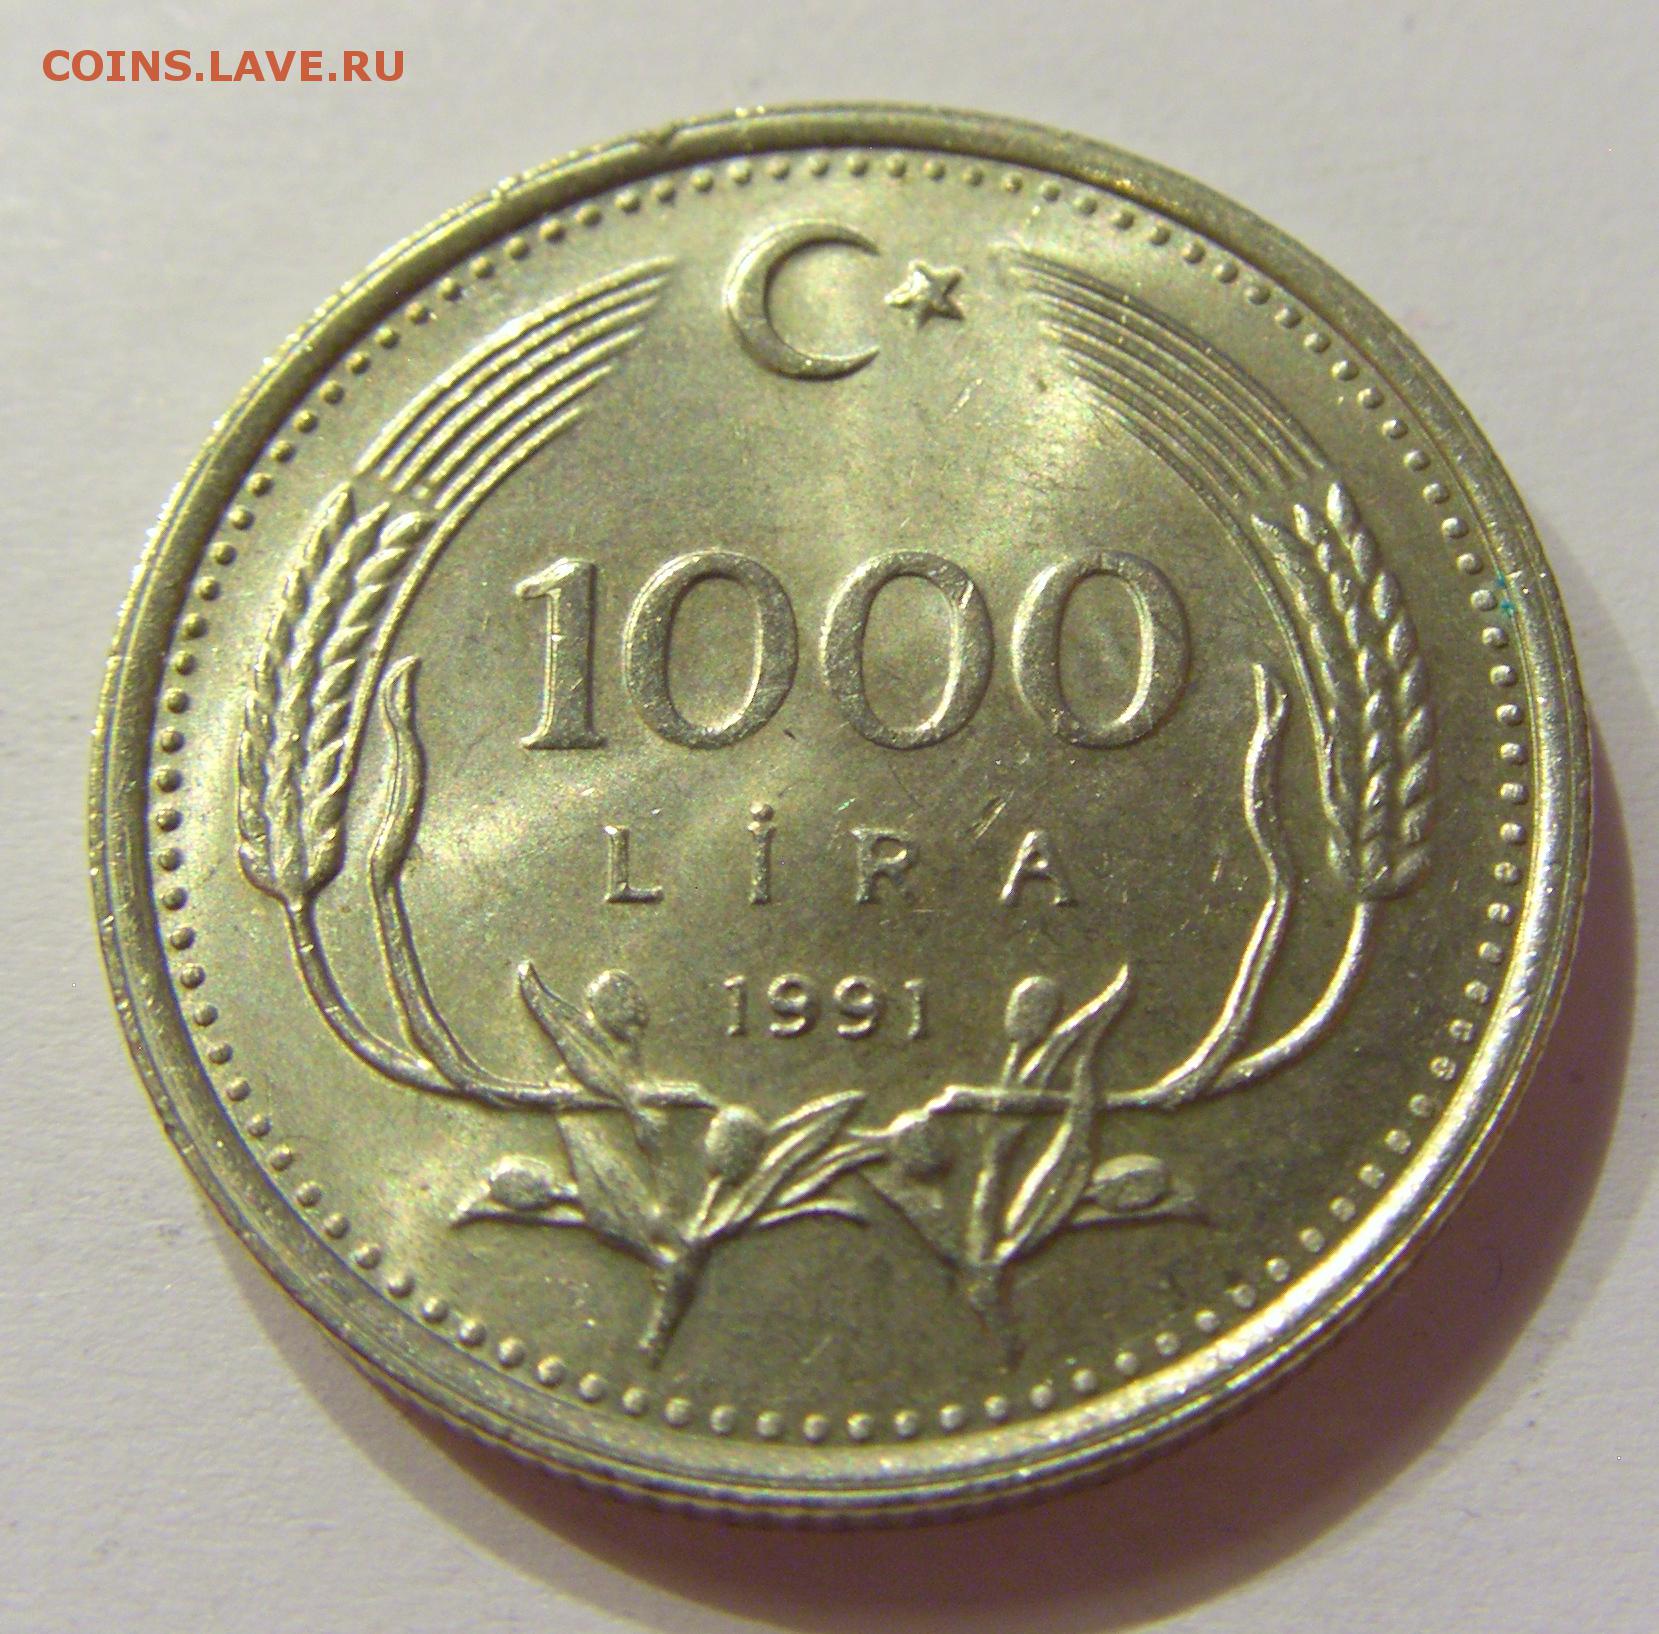 499 лир в рублях